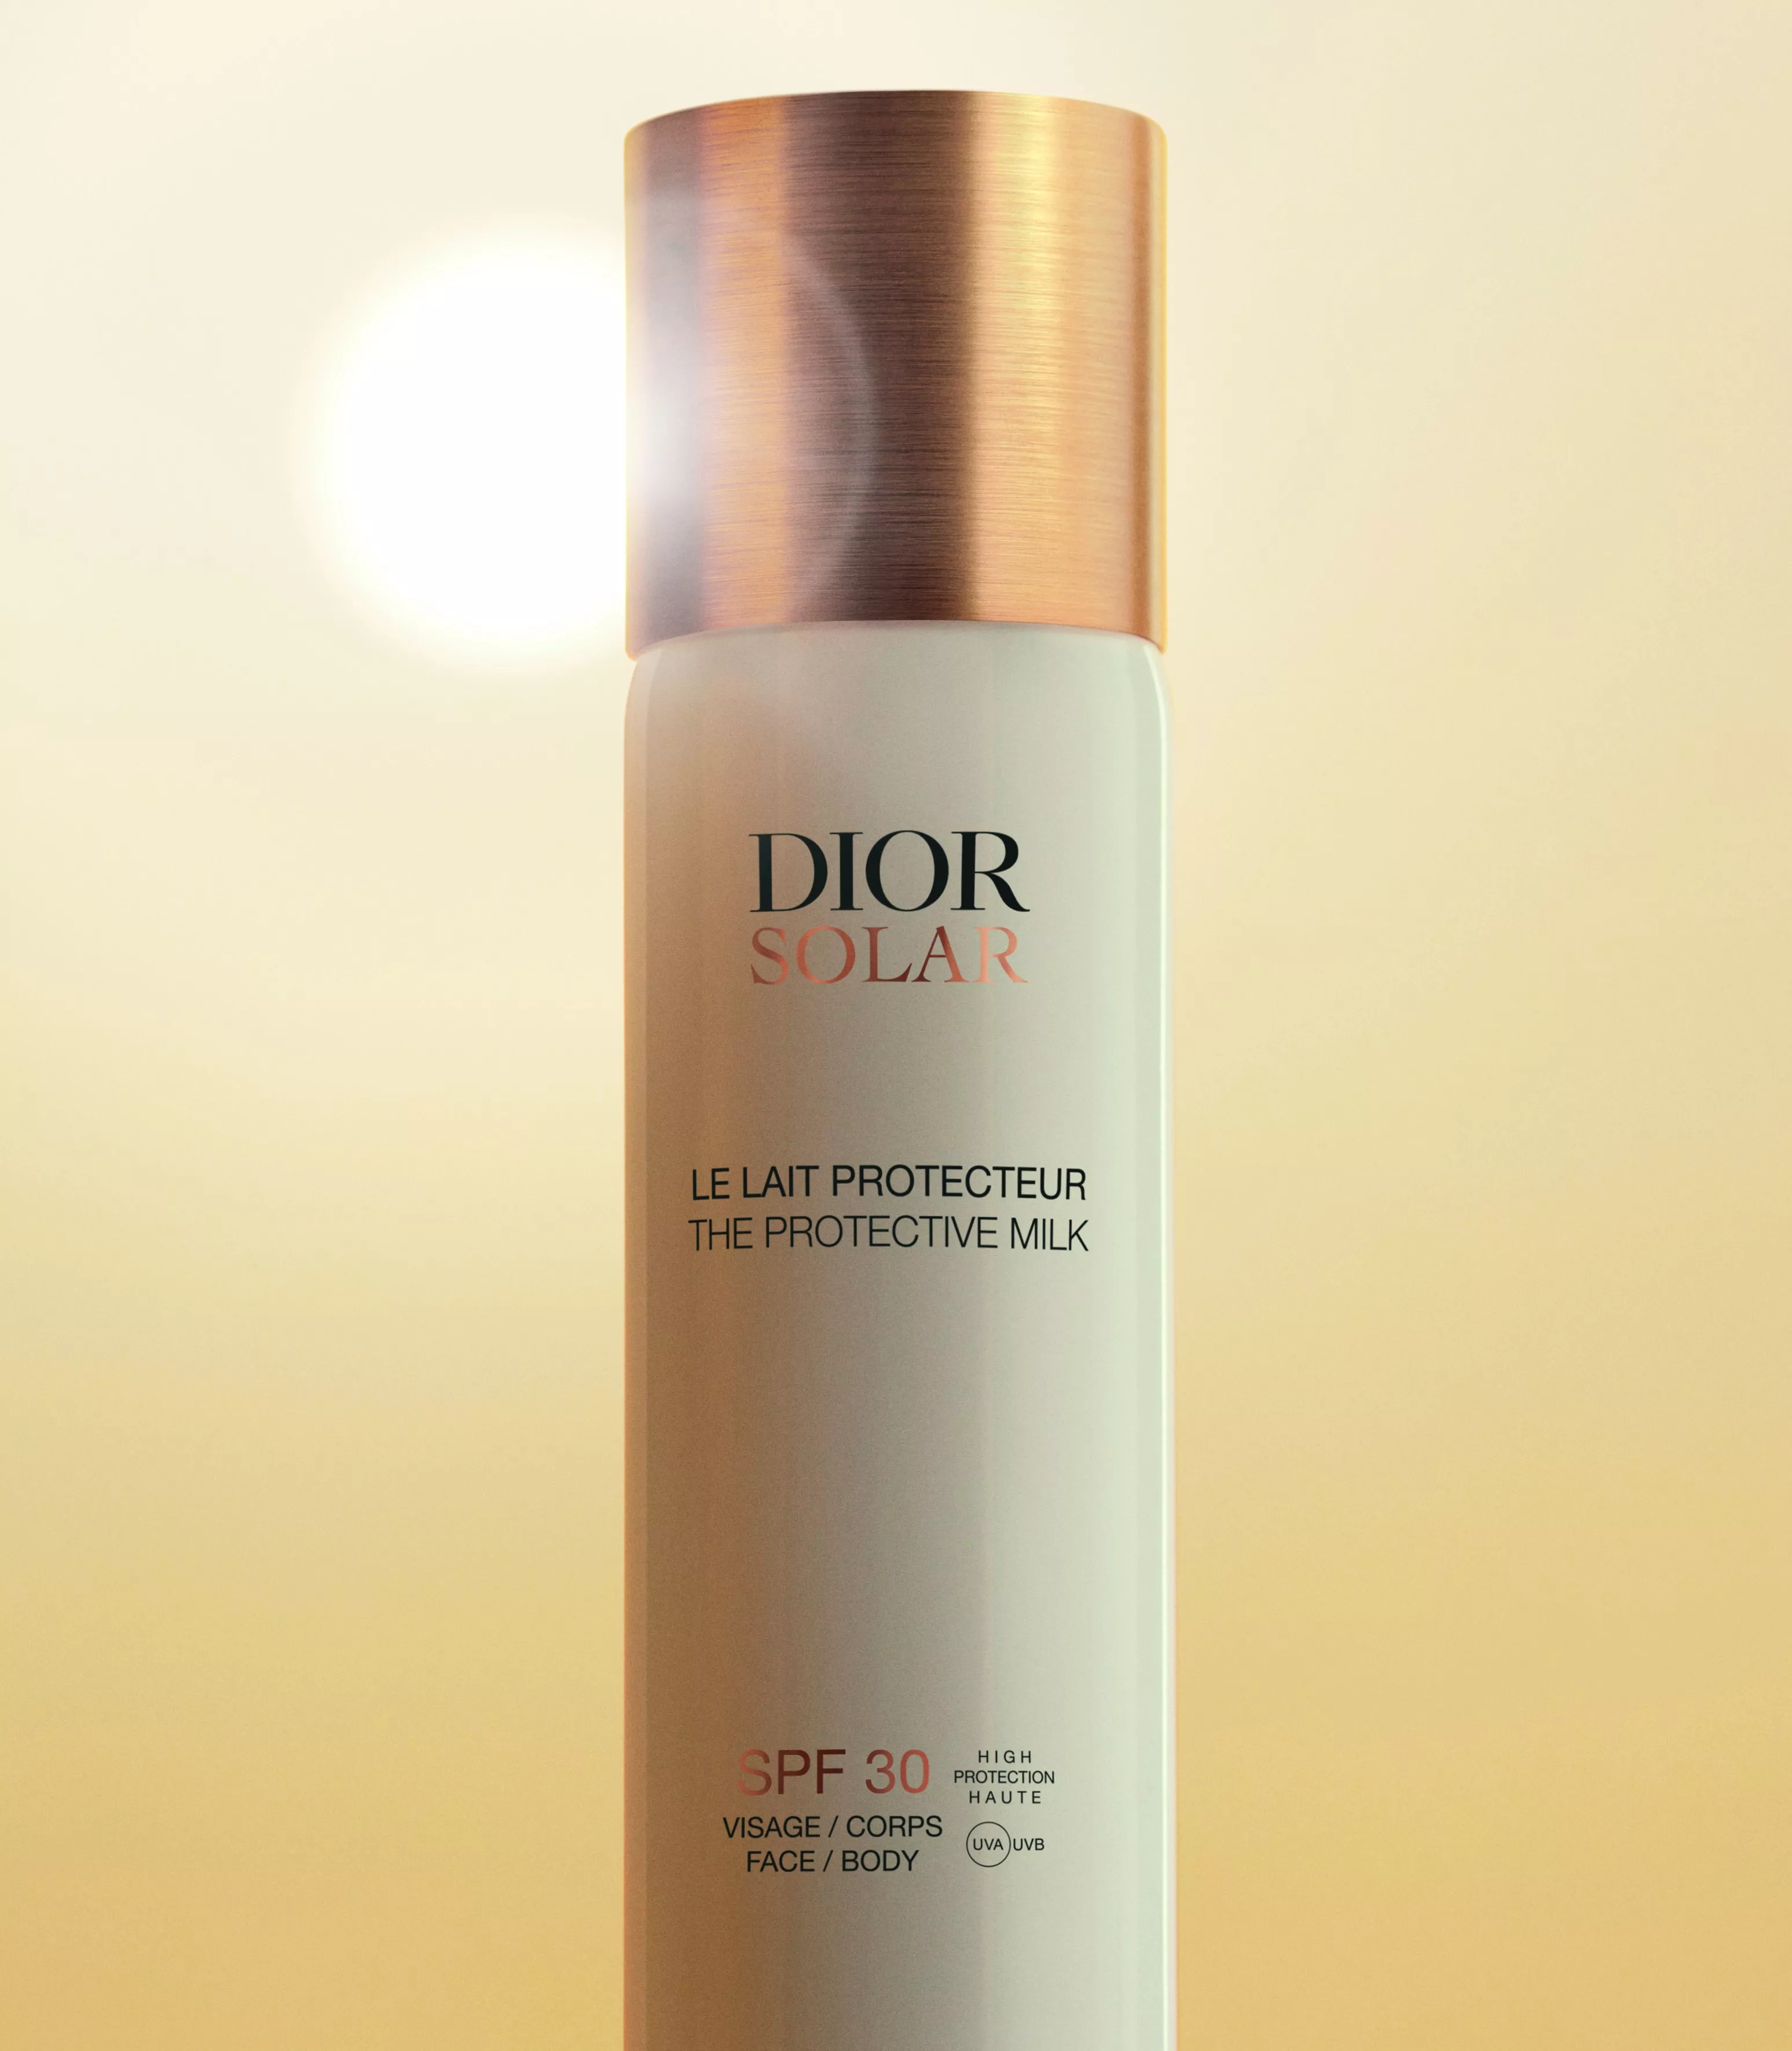 ديور تكشف عن مجموعتها Dior Solar الجديدة للوقاية من الشمس